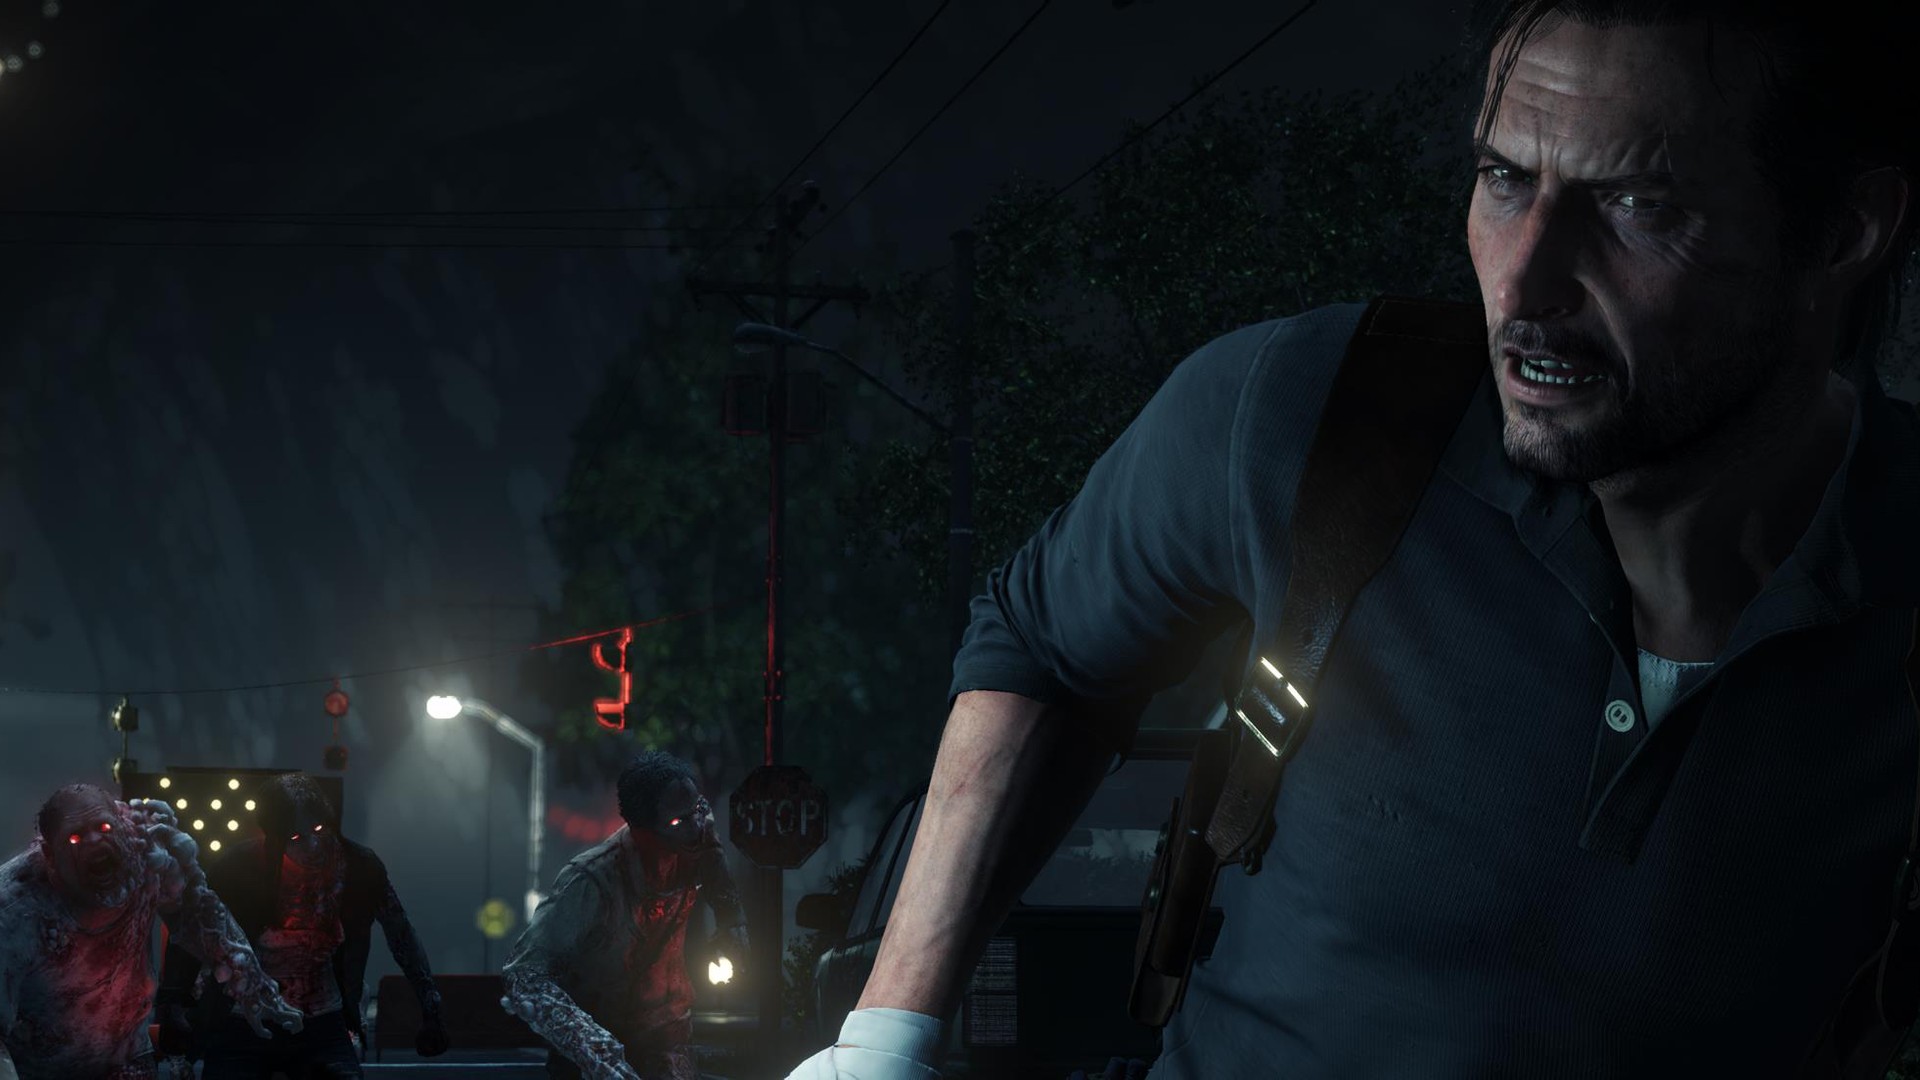 The Last of Us PC: requisitos mínimos e recomendados para